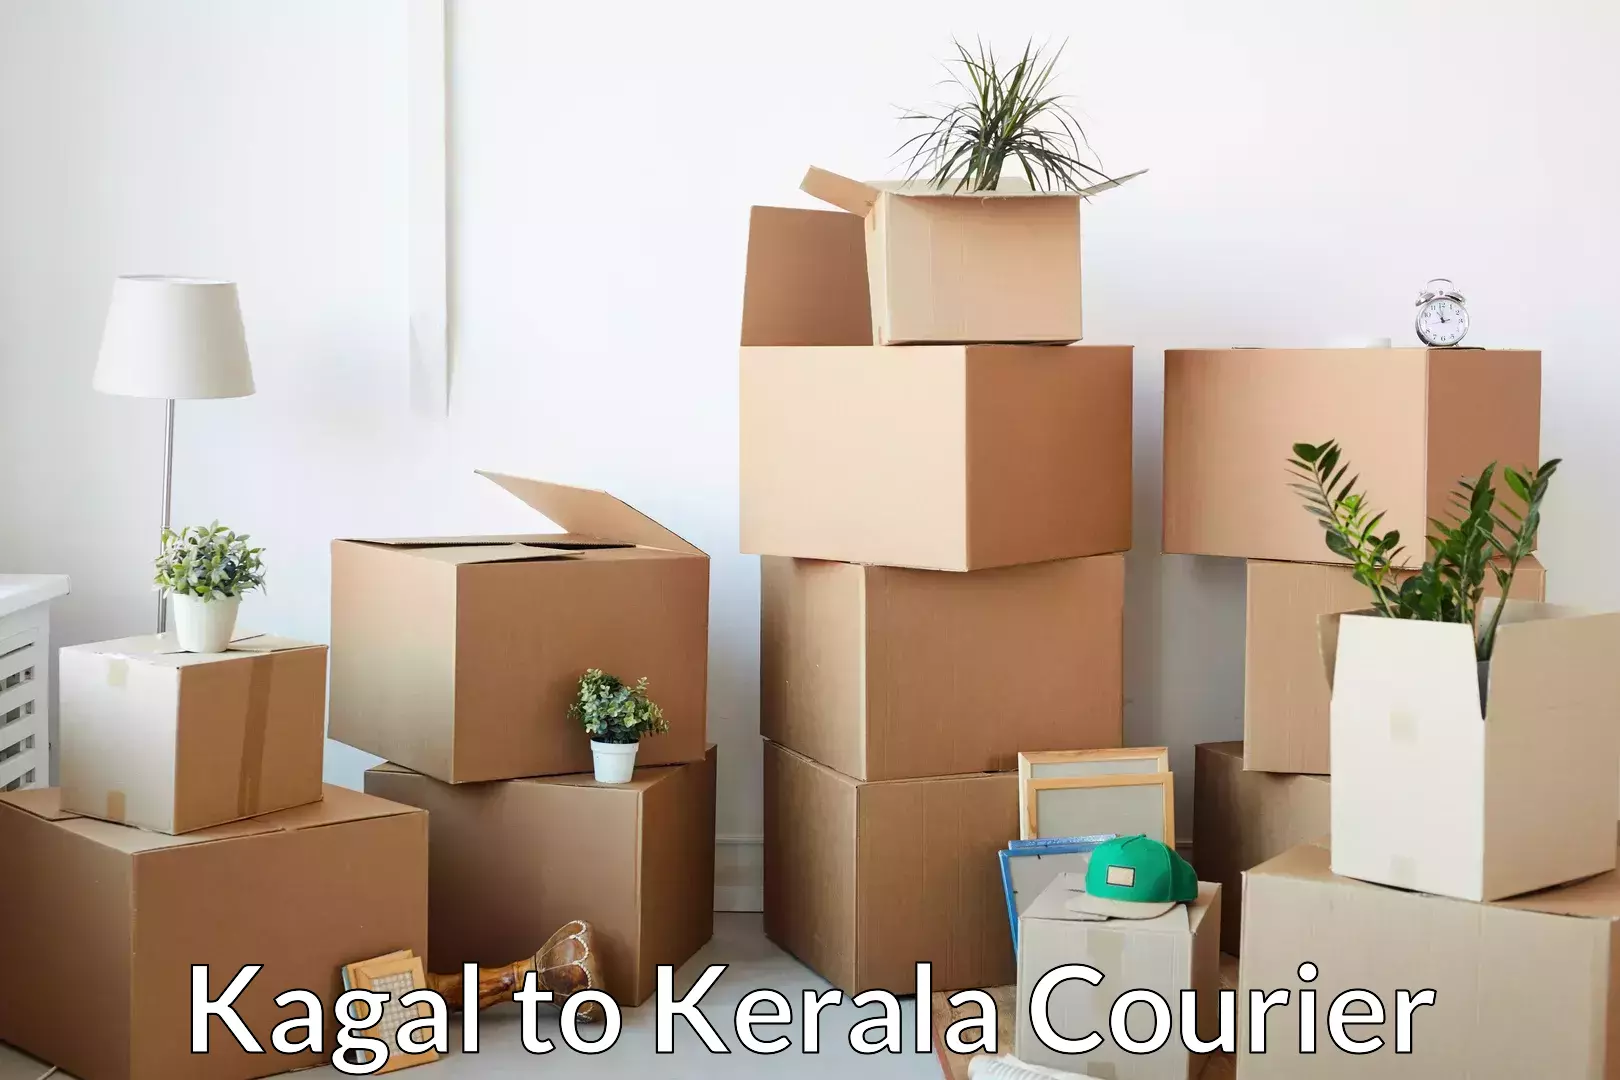 Furniture moving plans Kagal to Kerala